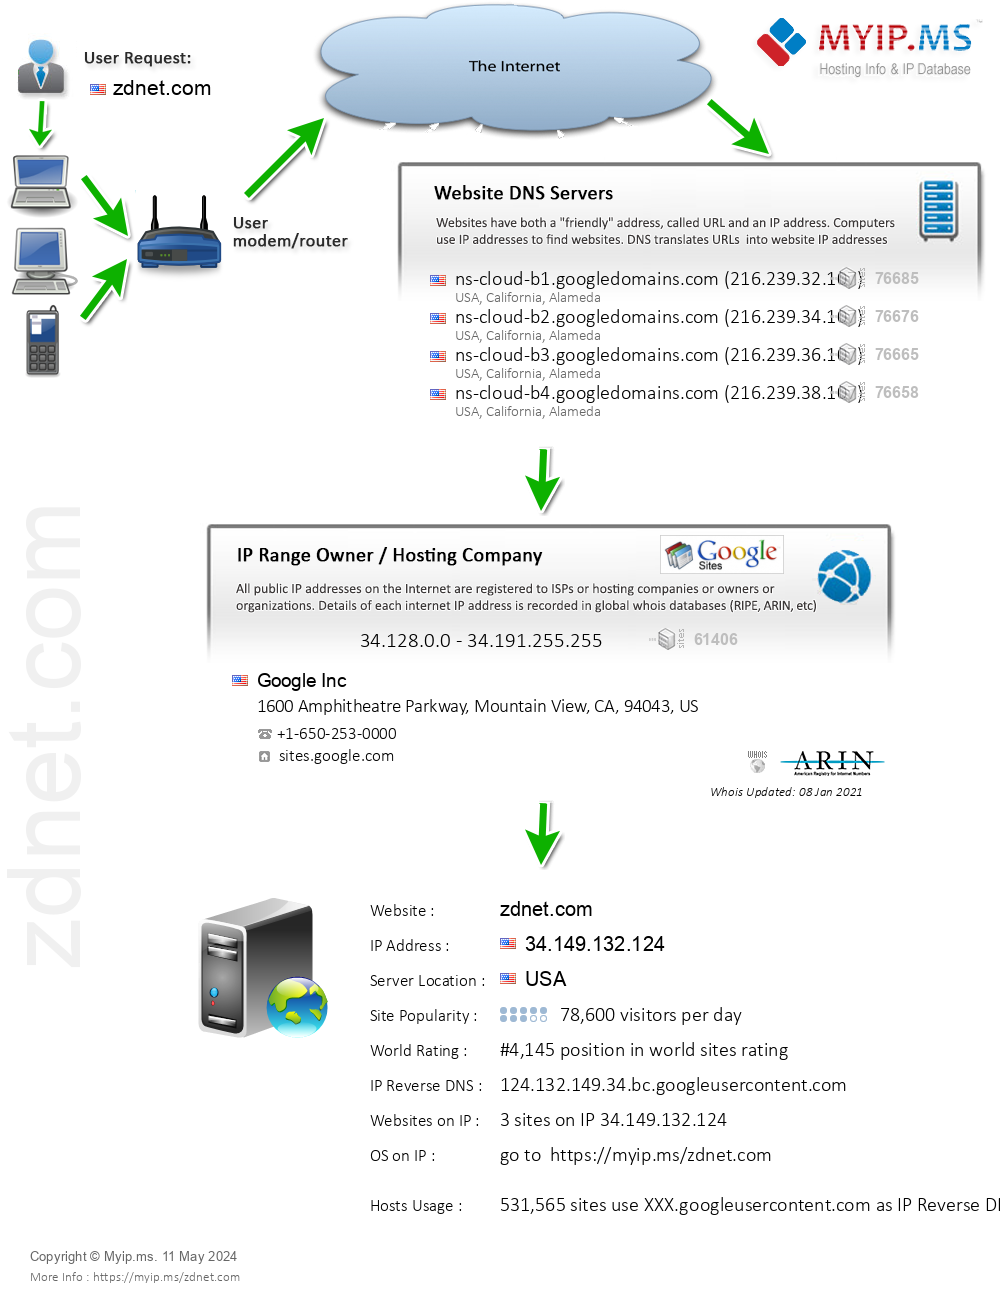 Zdnet.com - Website Hosting Visual IP Diagram